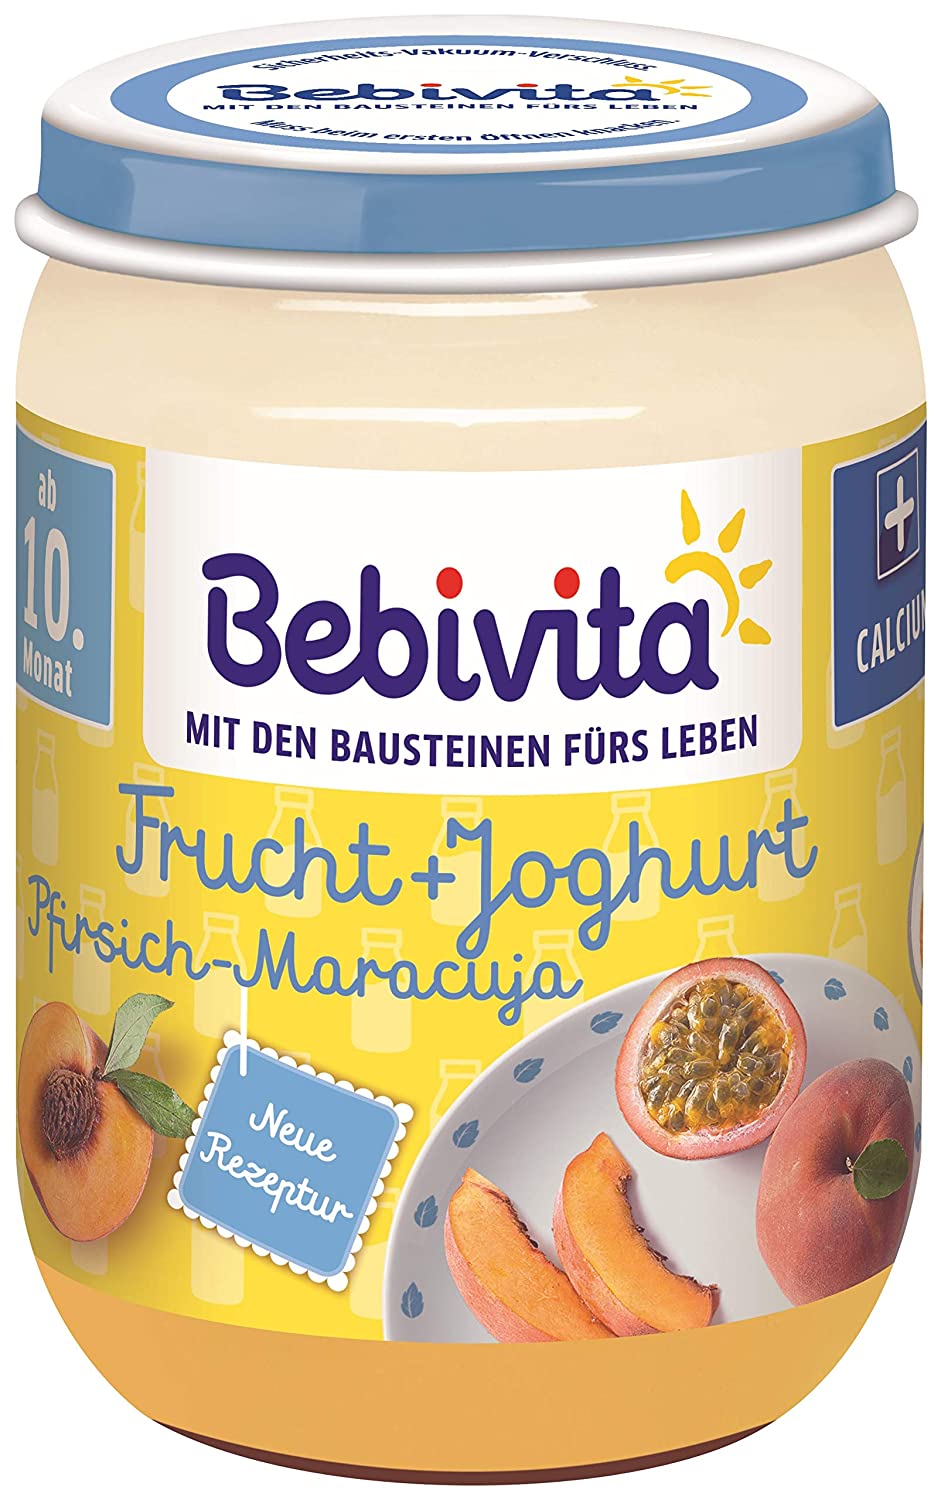 Bebivita Frucht & Joghurt / Quark DUO Pfirsich-Maracuja / Joghurt, 190 g